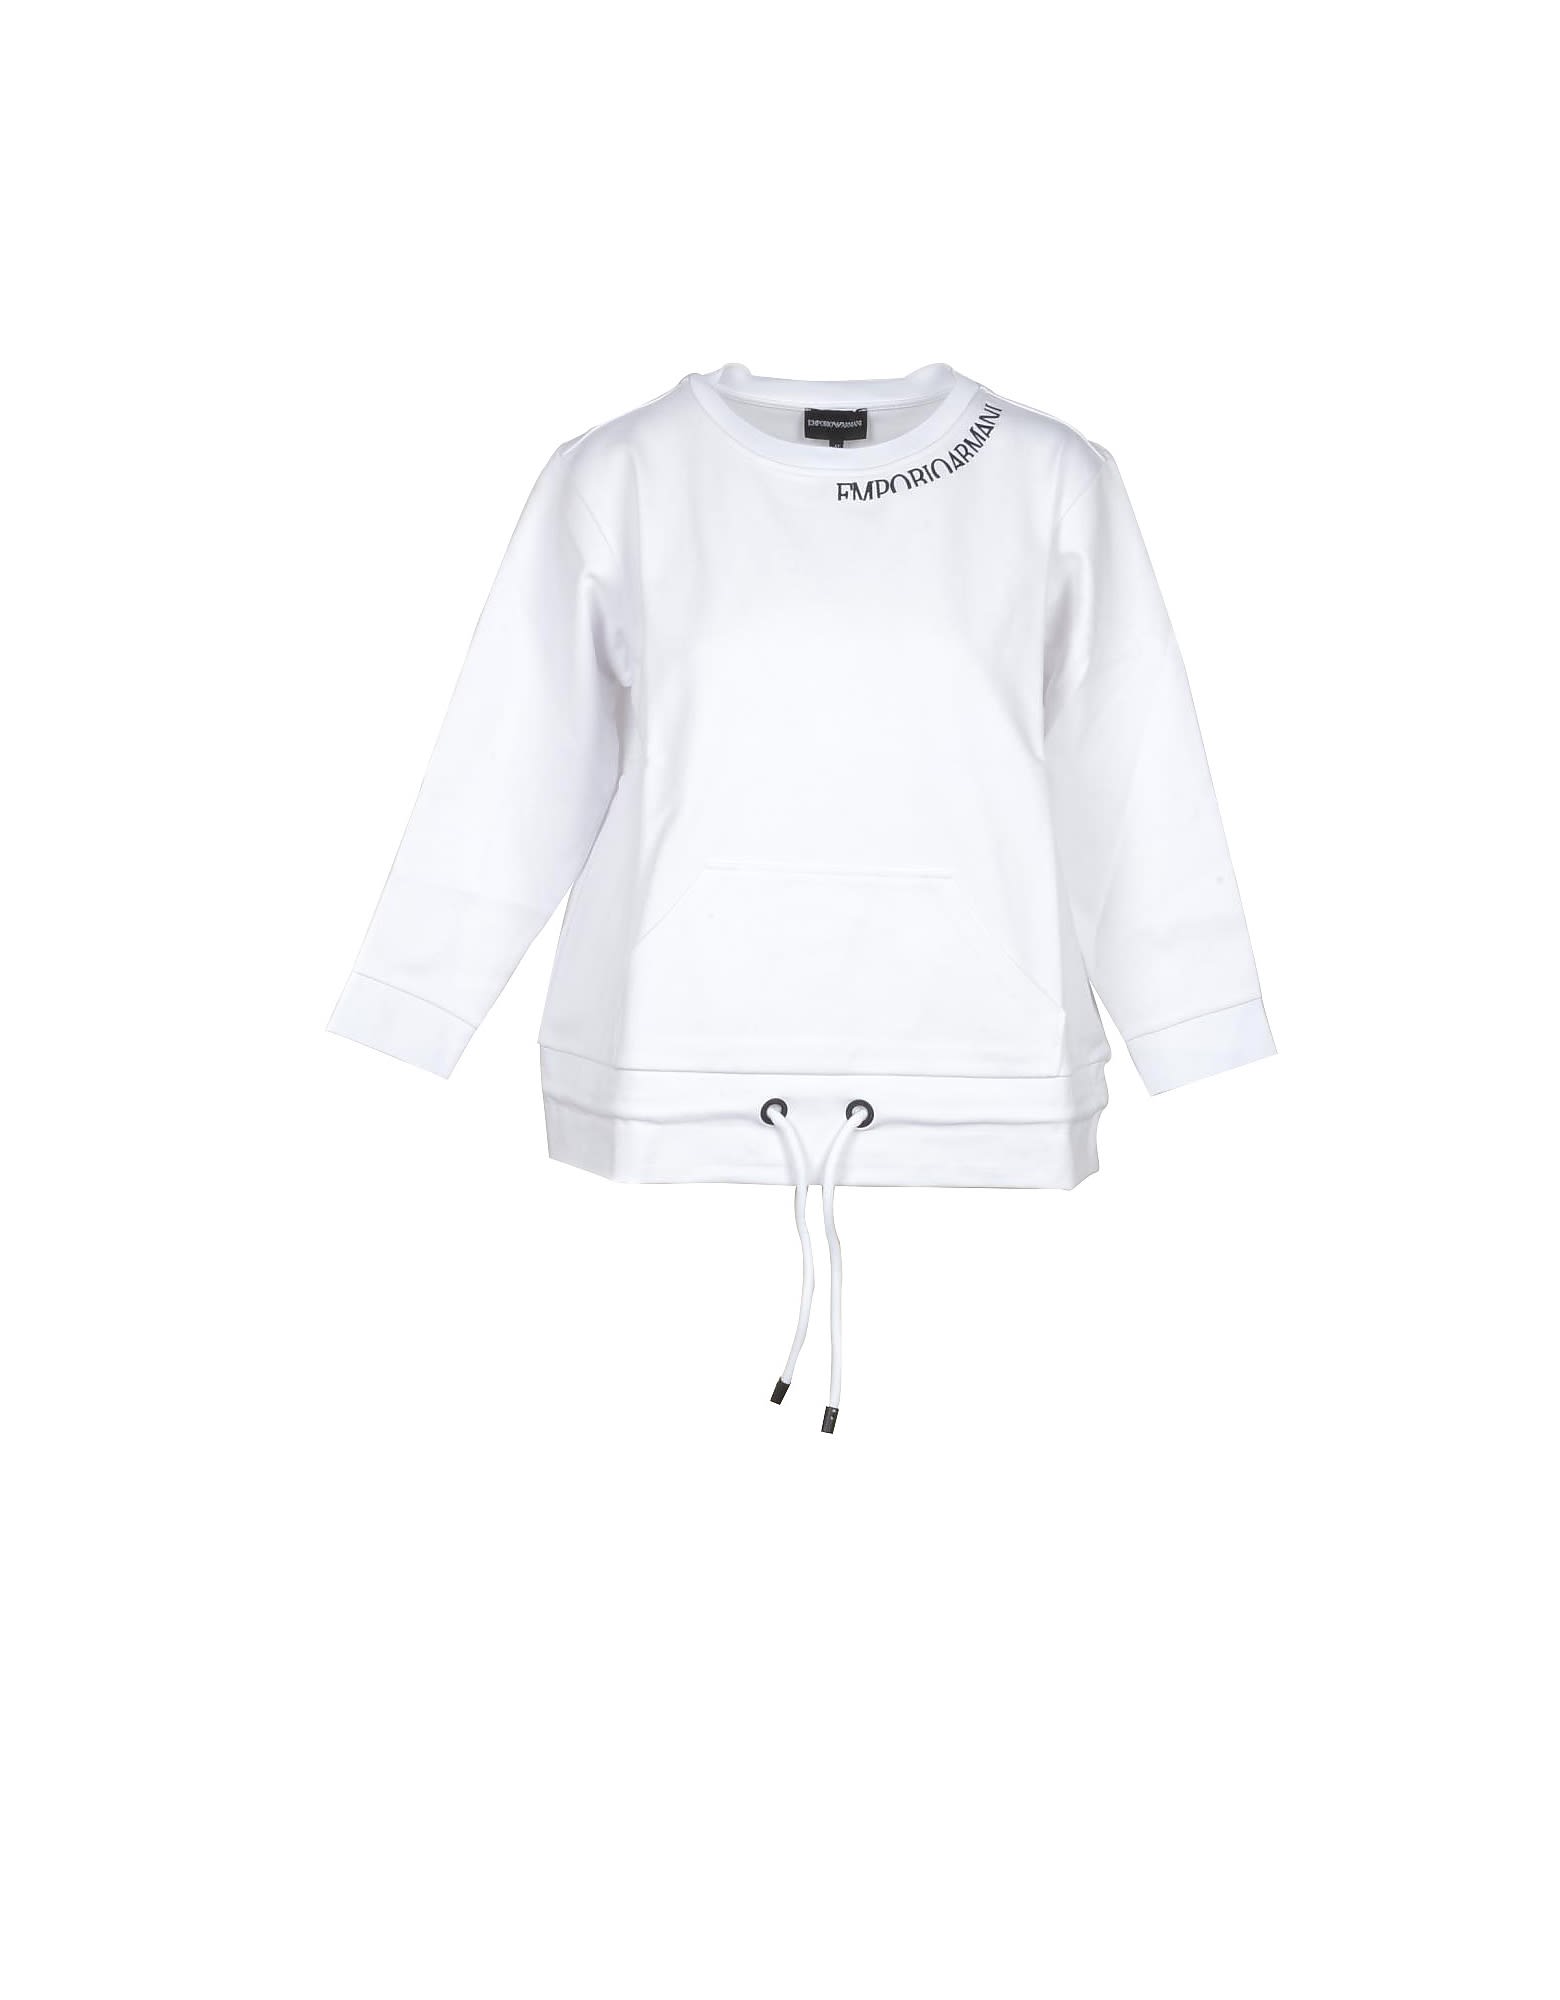 Emporio Armani Womens White Sweatshirt